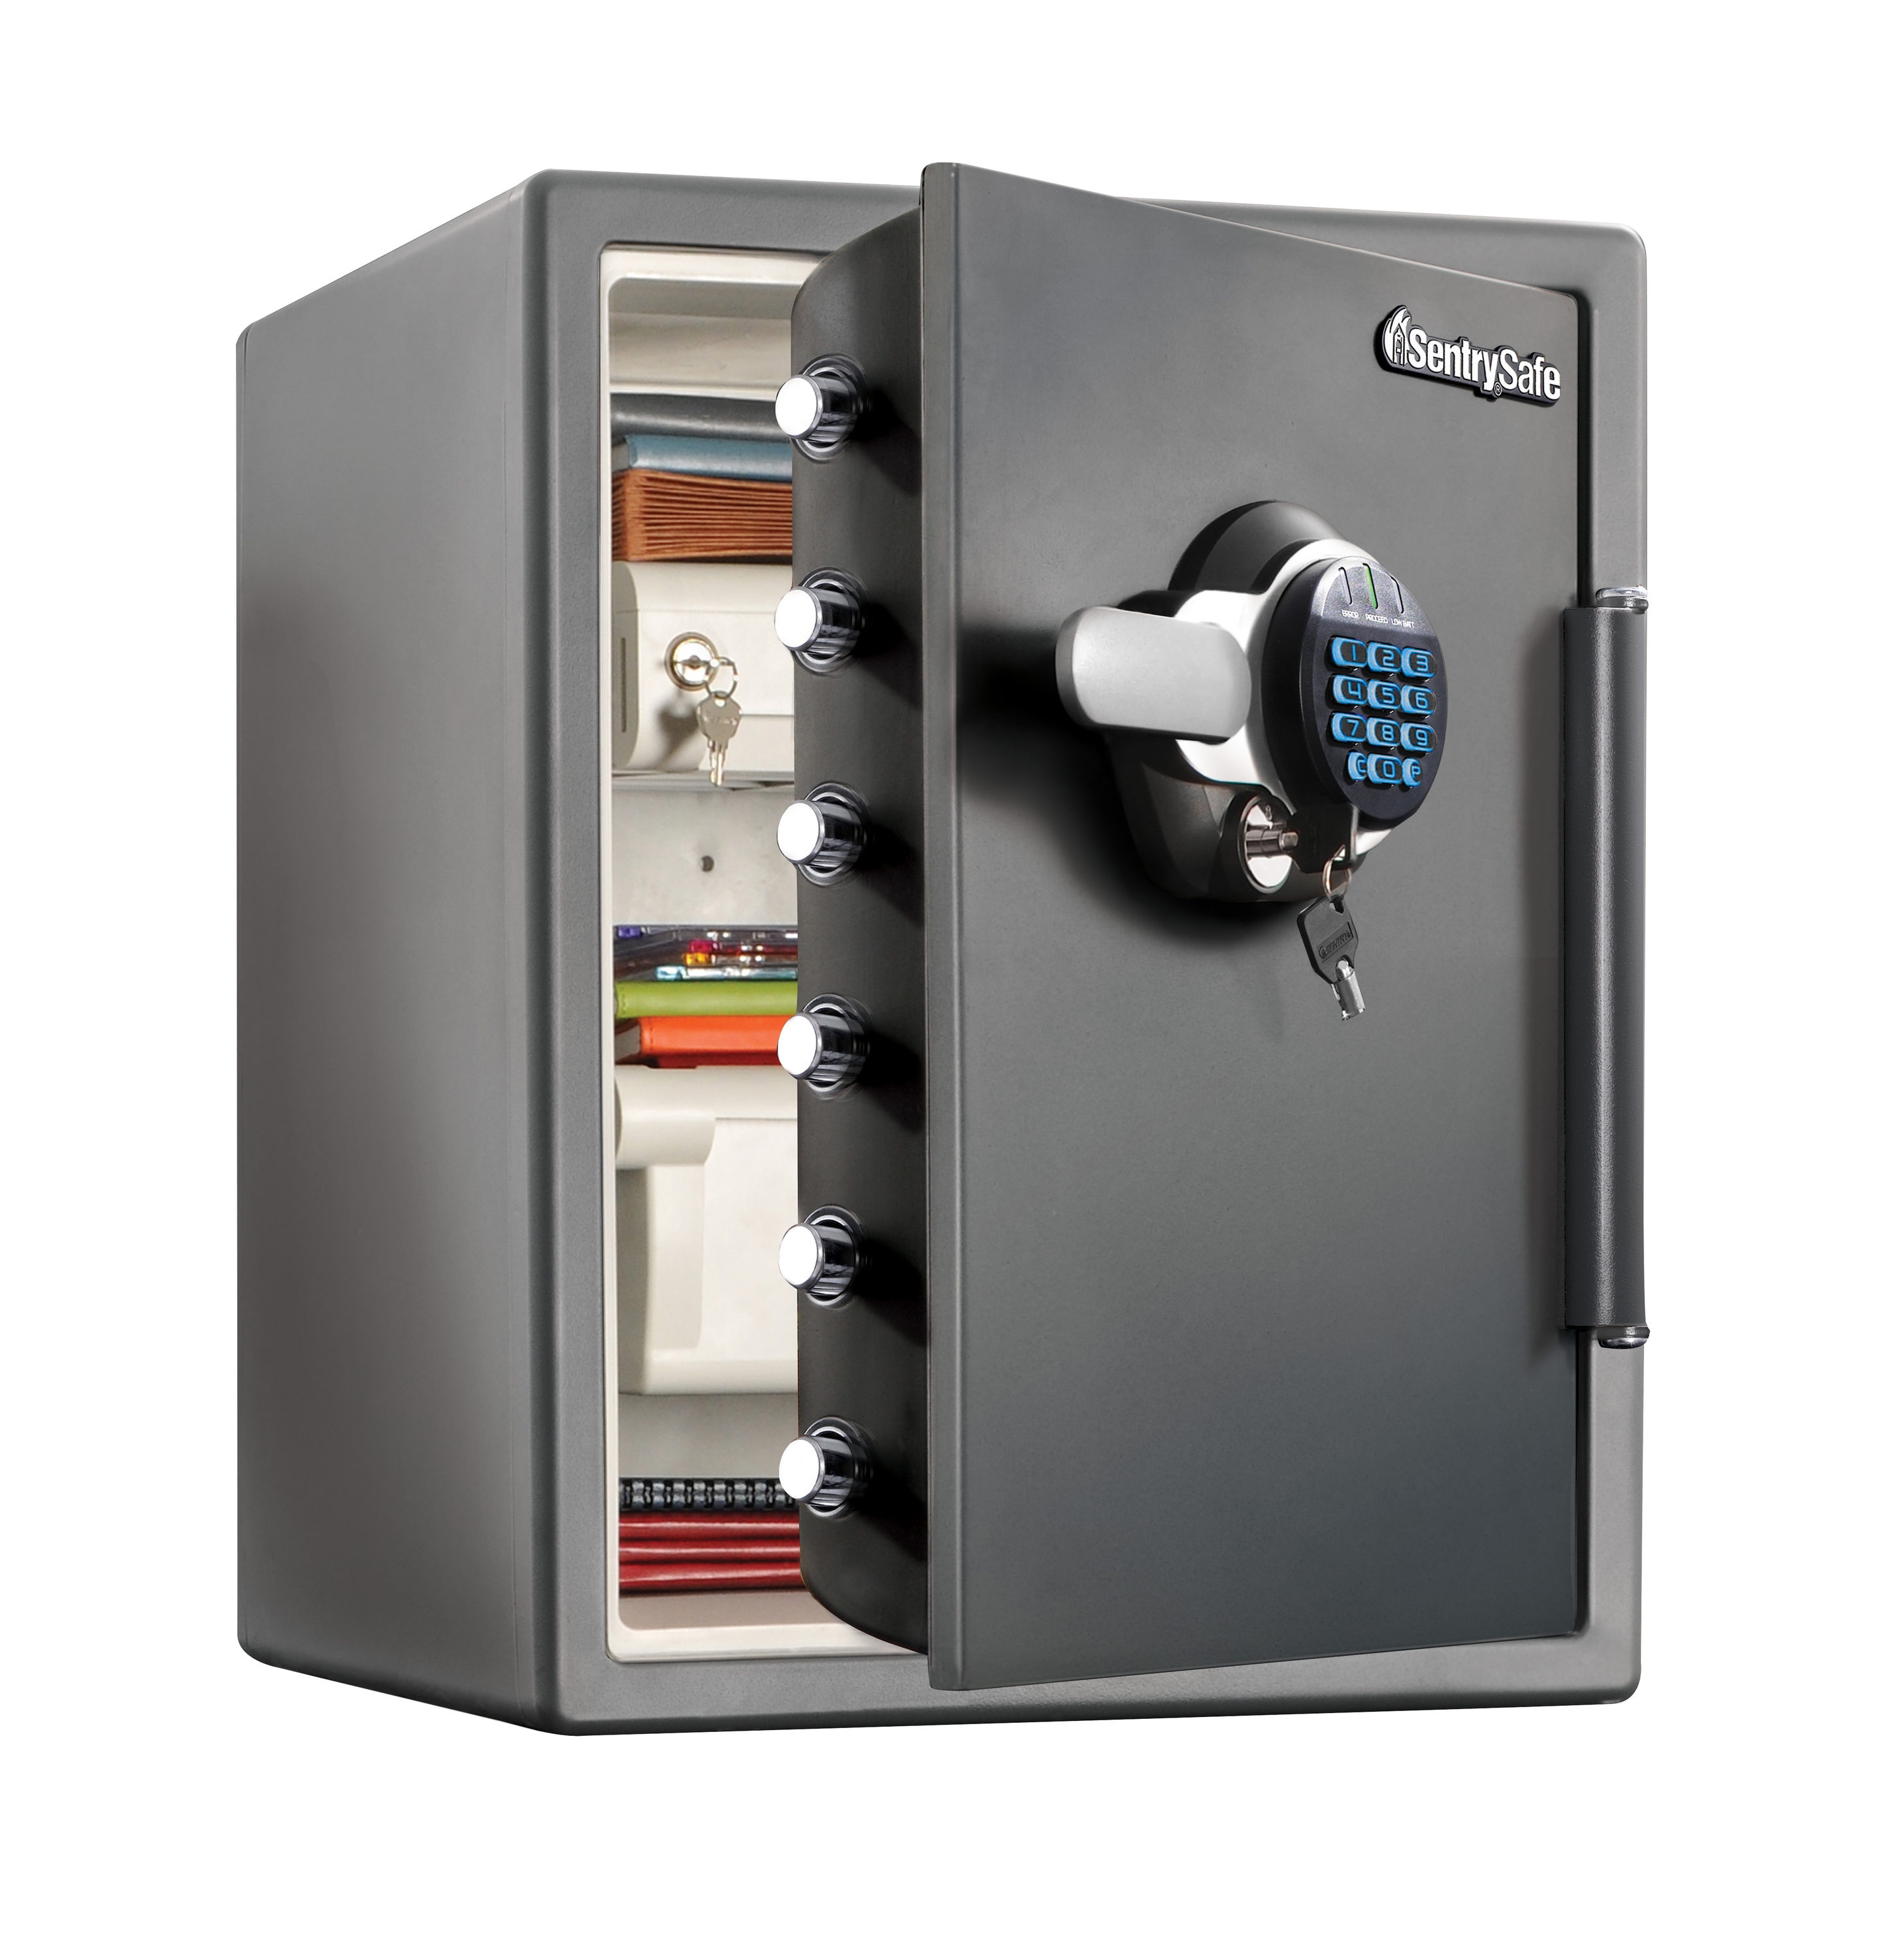 Bran 4 -piece Refrigerator Lock, Freezer Lock, Children's Safety